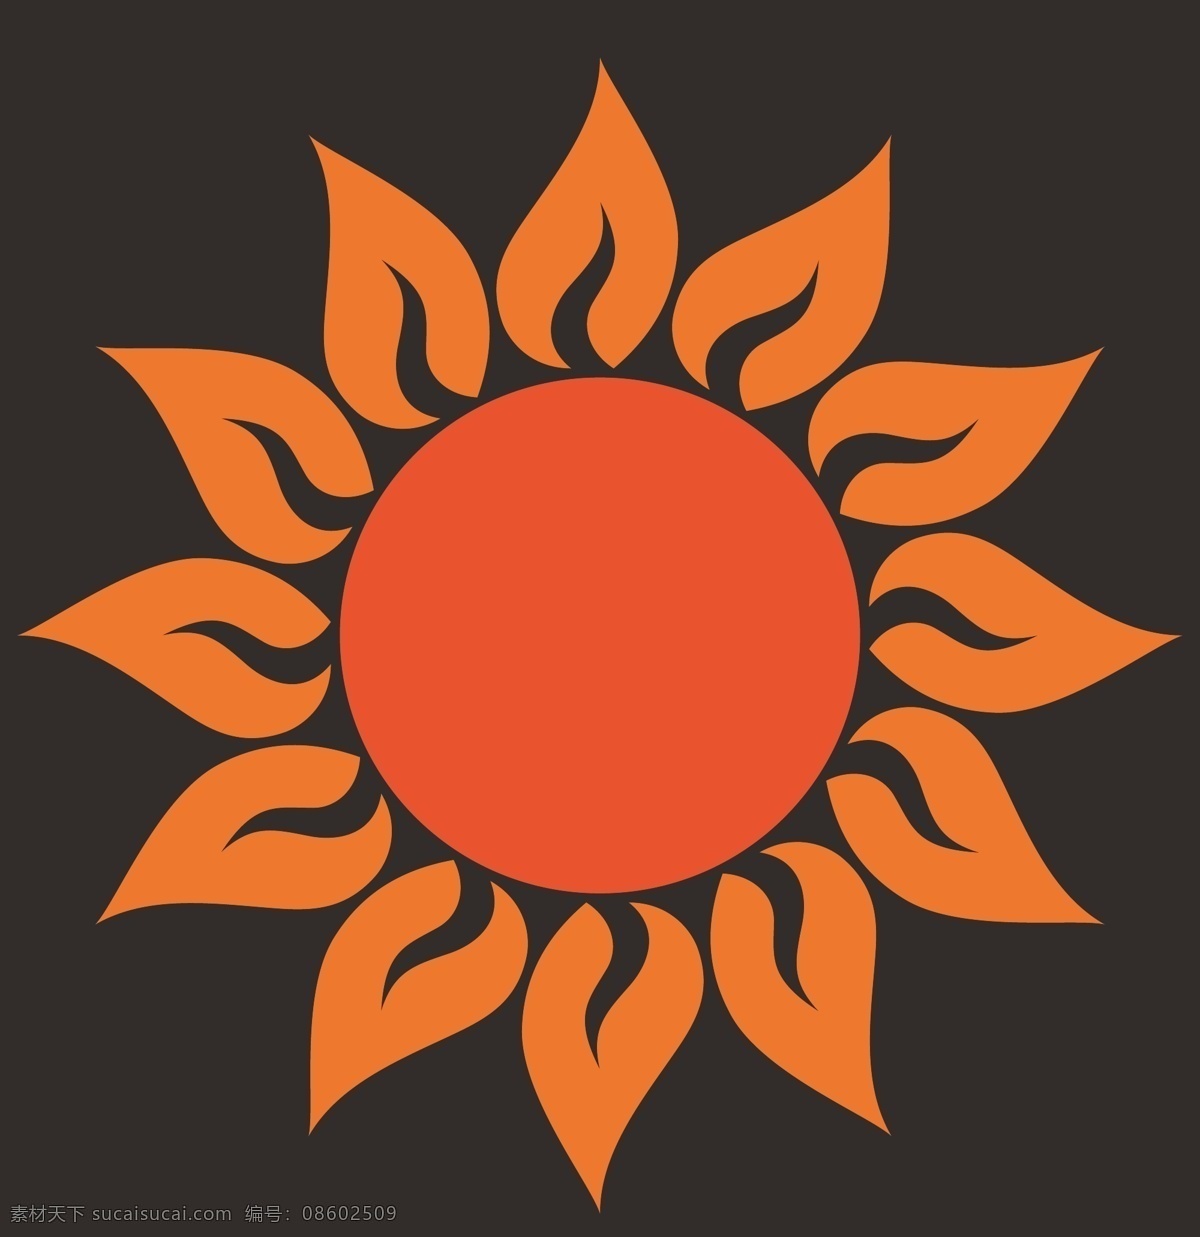 太阳矢量素材 太阳模板下载 漂亮 高档 颜色 多种 形式 可爱 太阳 少数民族图案 传统纹理 底纹背景 底纹边框 矢量